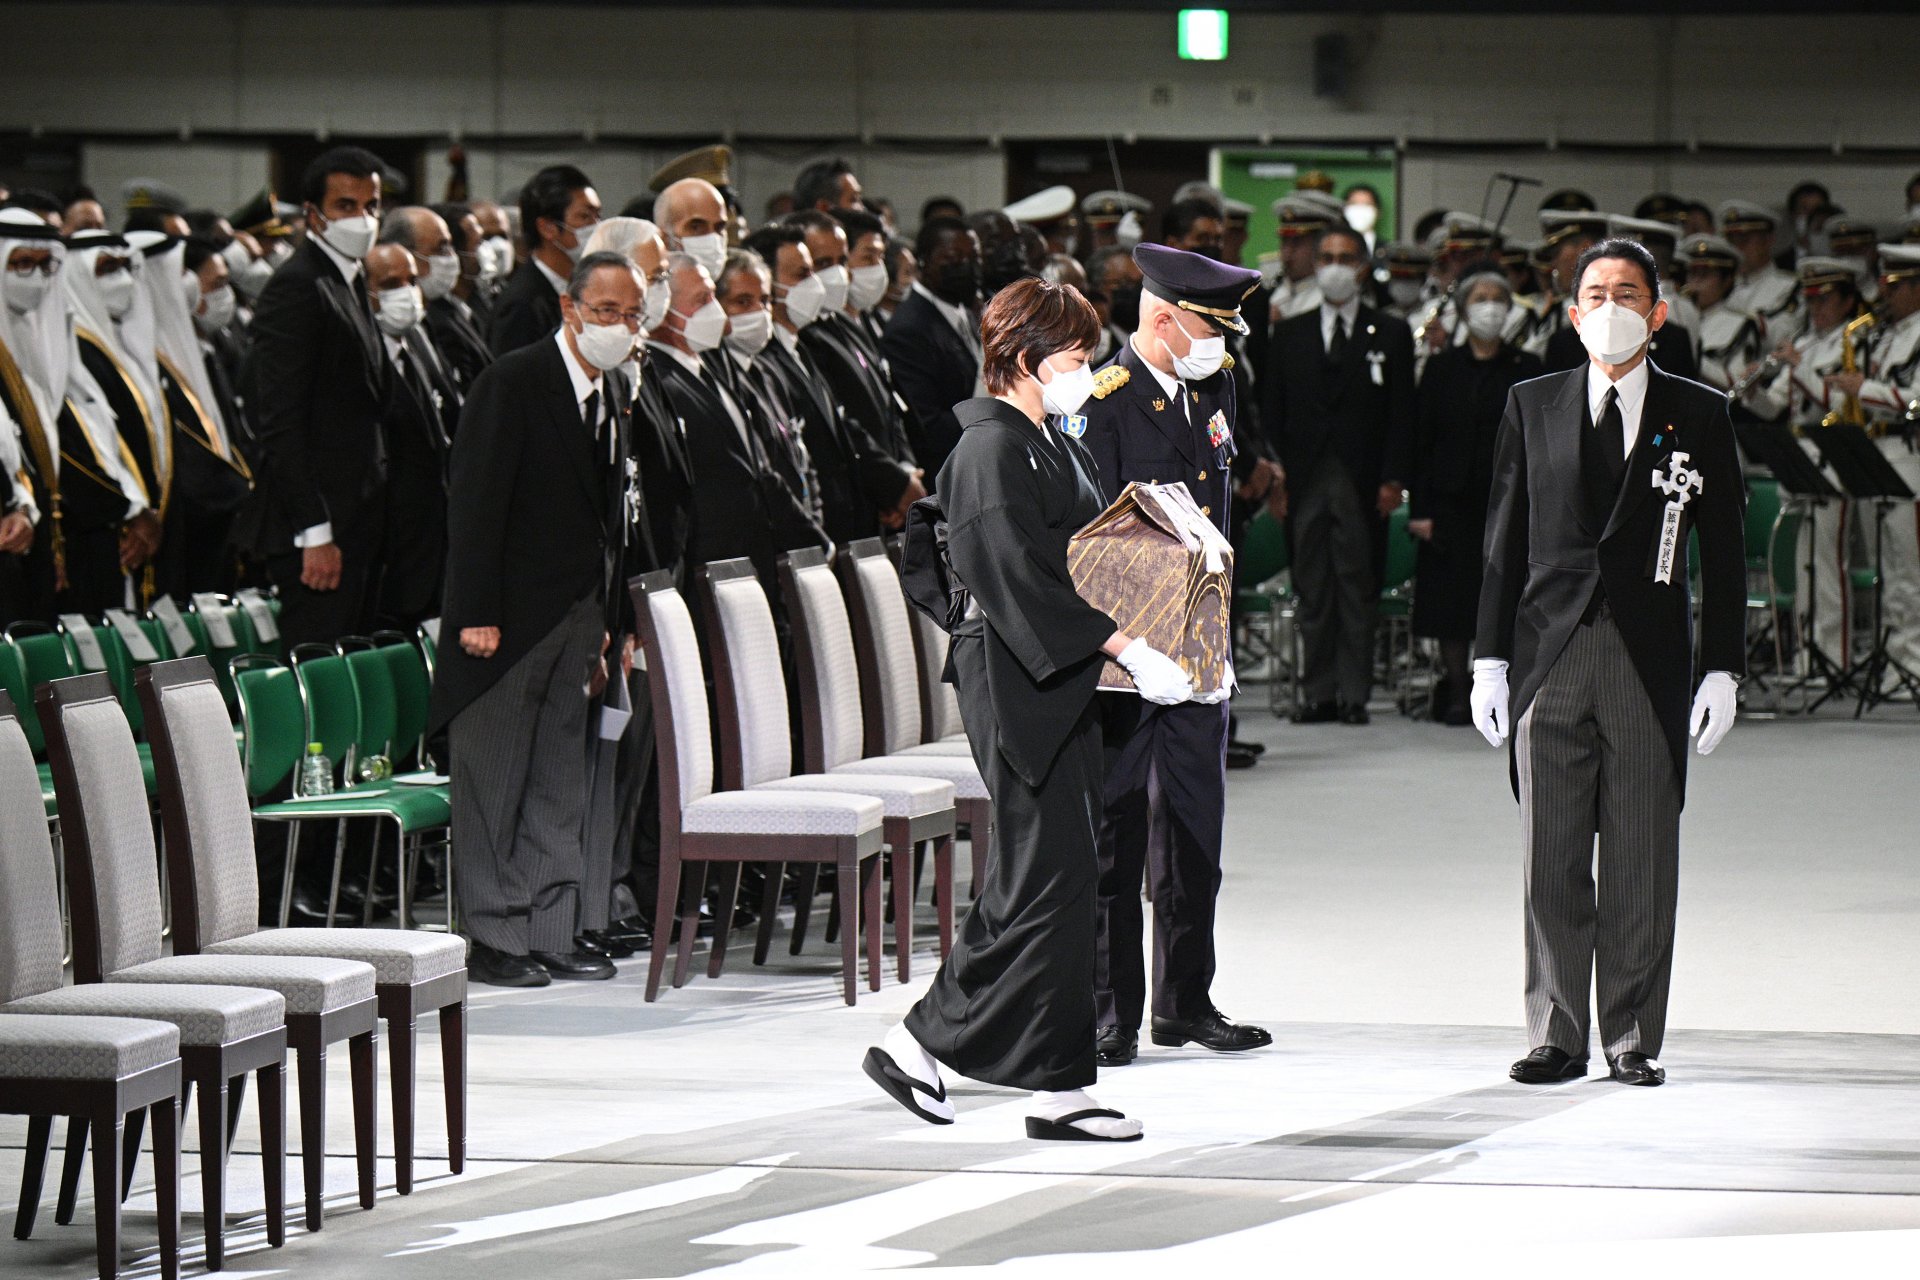 Държавното погребение на Абе, който получи частно погребение дни след убийството е първото, което получава ксклузивна церемония от 1967 г. насам, когато по същия начин е изпратен бившия премиер Шигеру Йошида. 